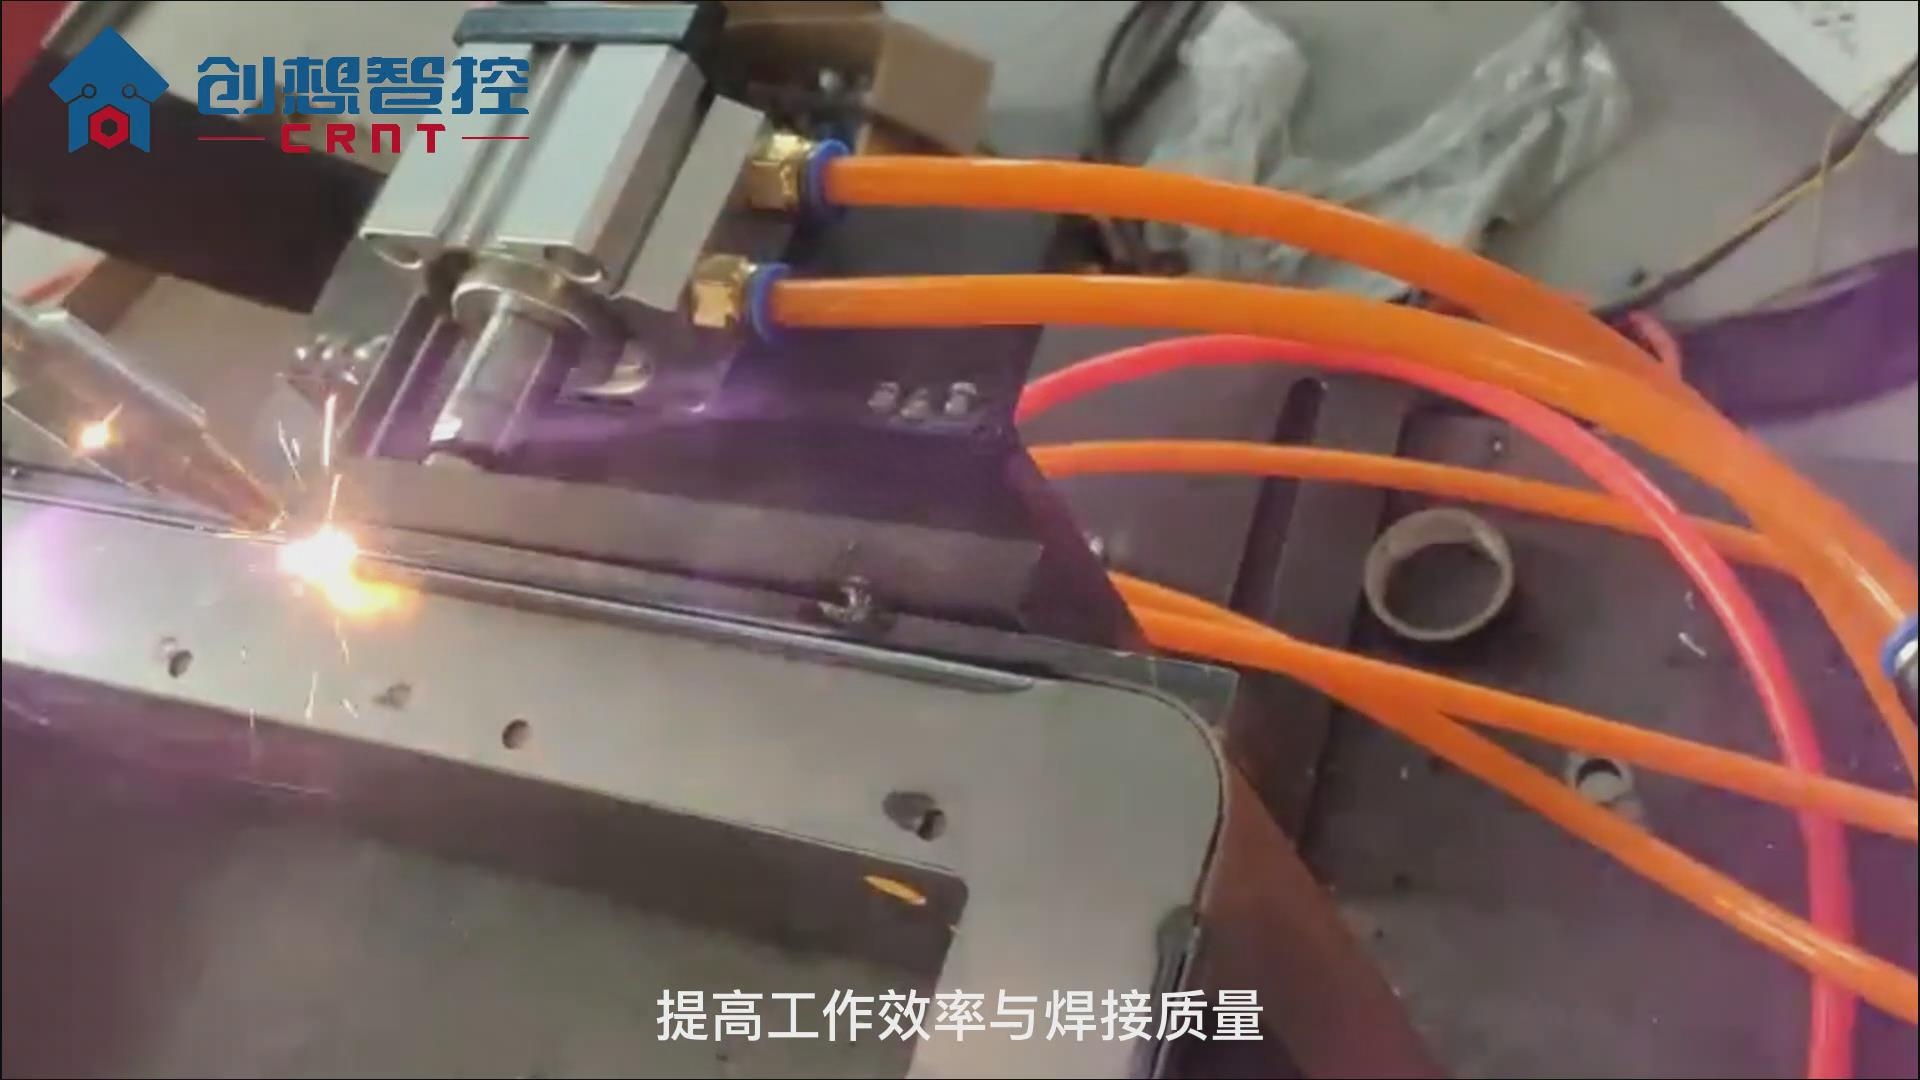 激光焊縫跟蹤系統在保險柜自動焊接的應用